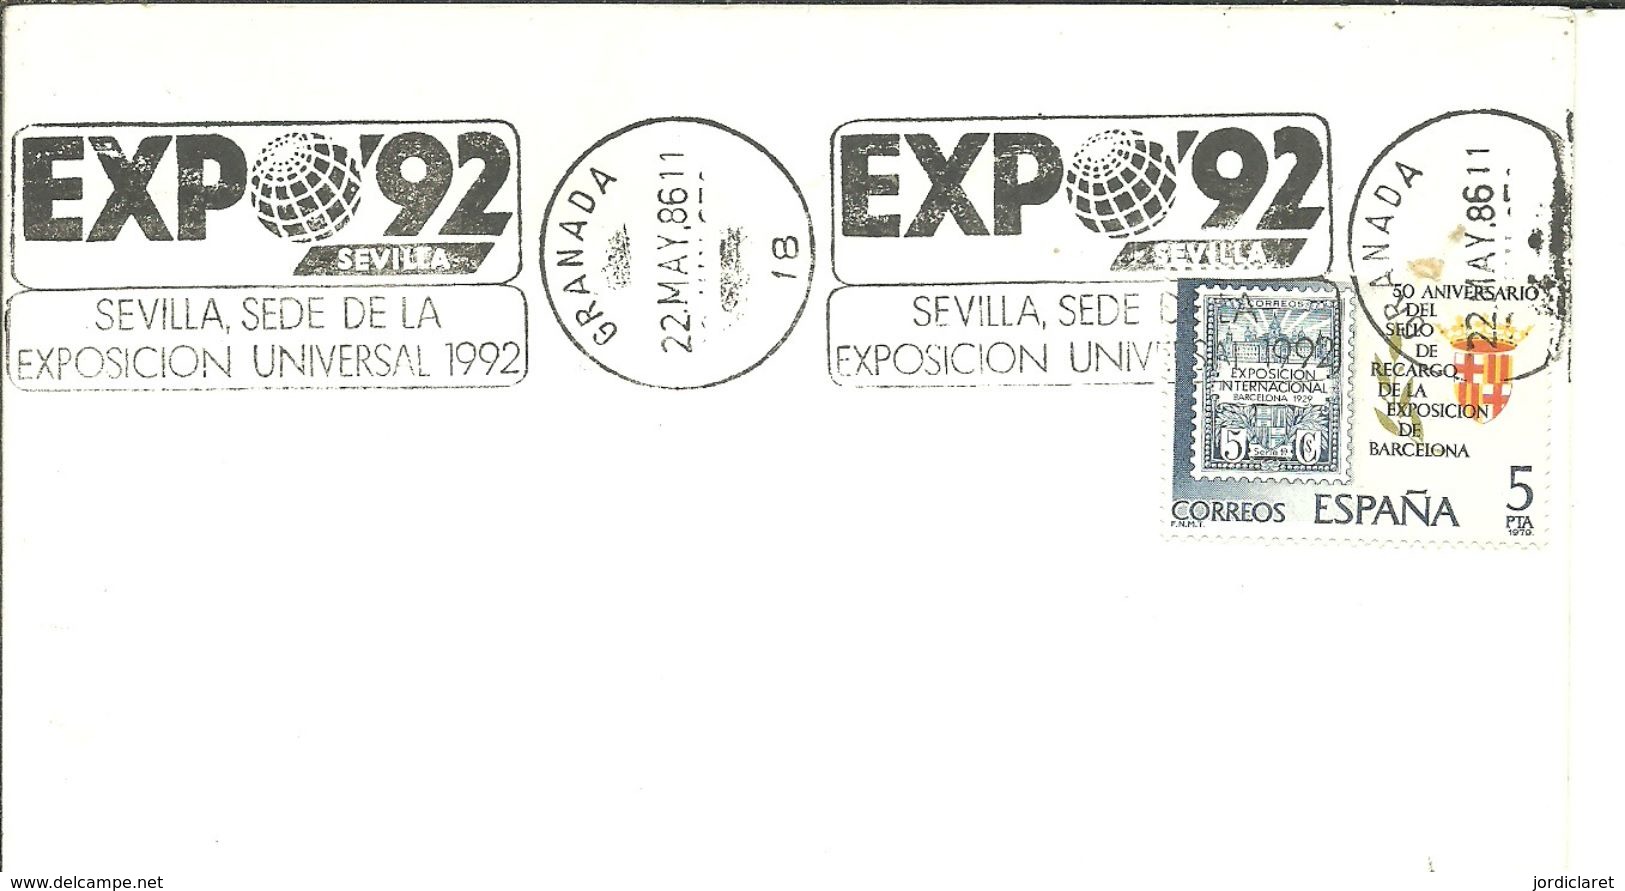 POSMARKET ESPAÑA HUELVA - 1992 – Sevilla (Spain)